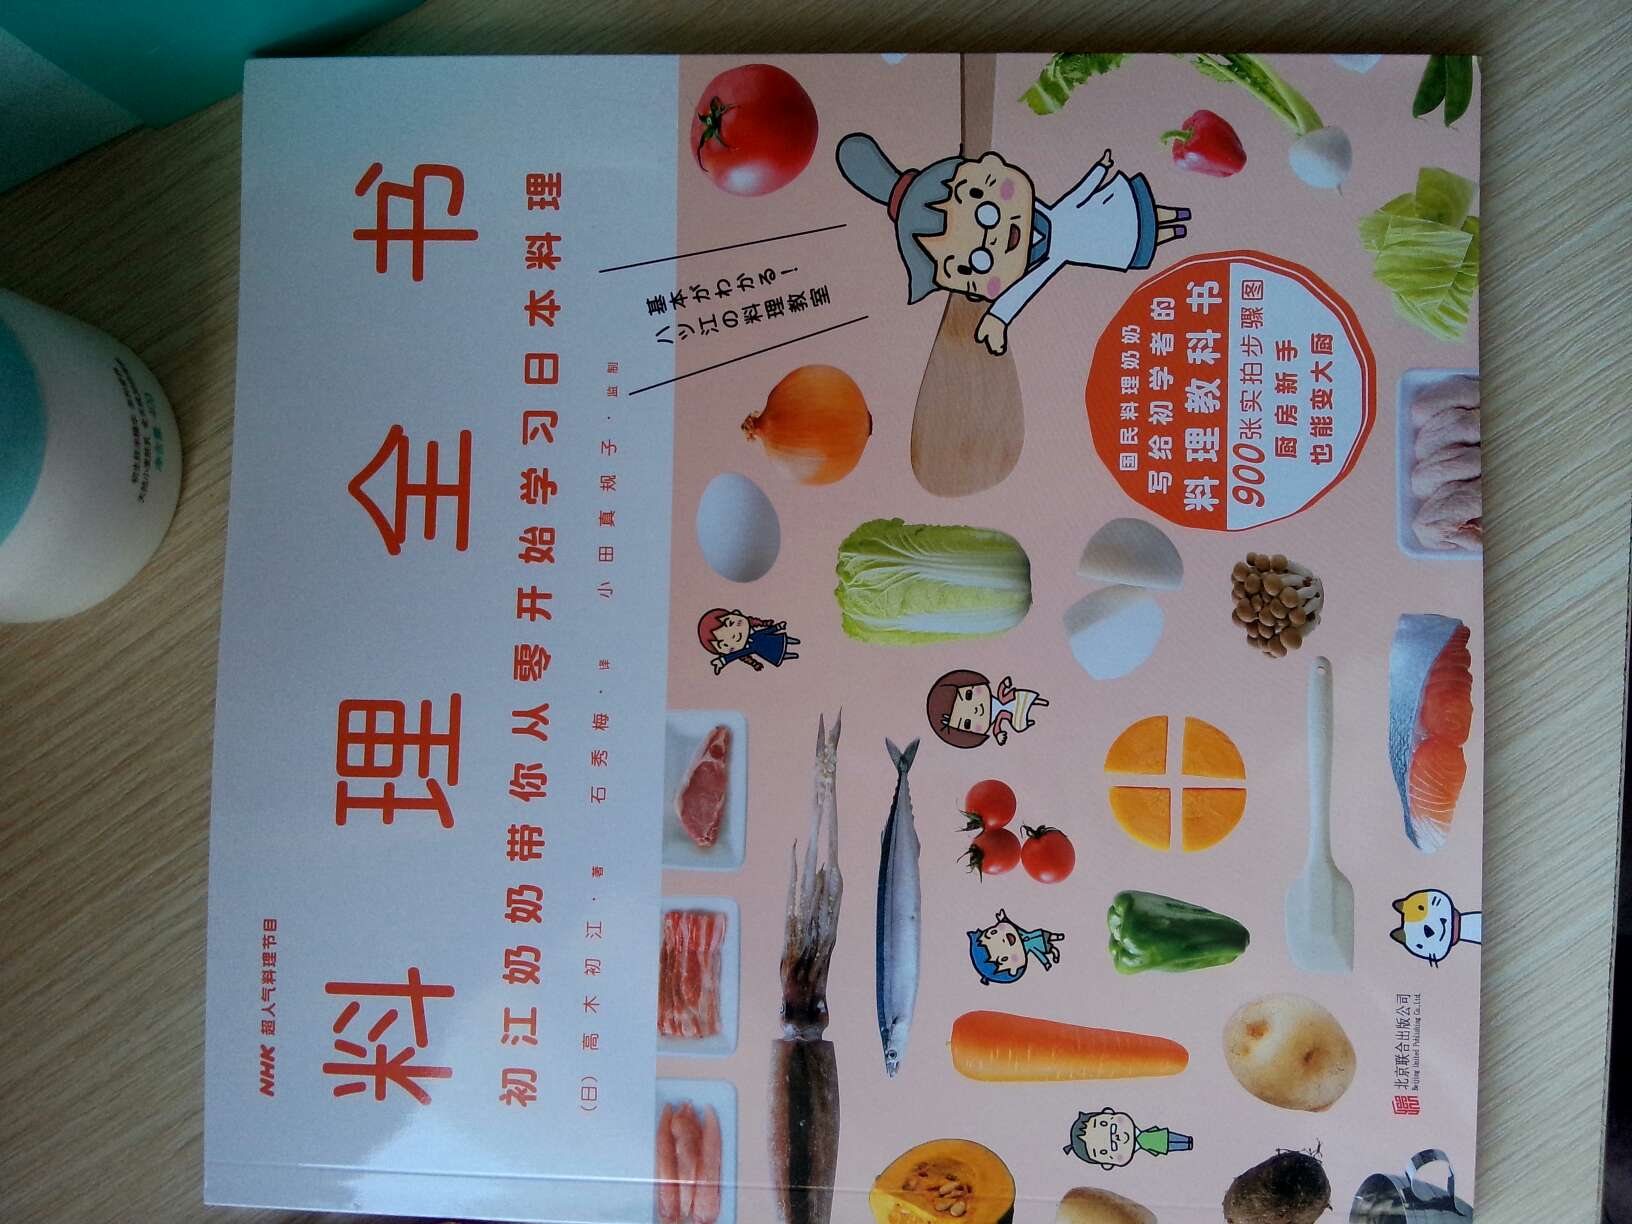 正在看，不错的书，希望能多学点健康的菜式